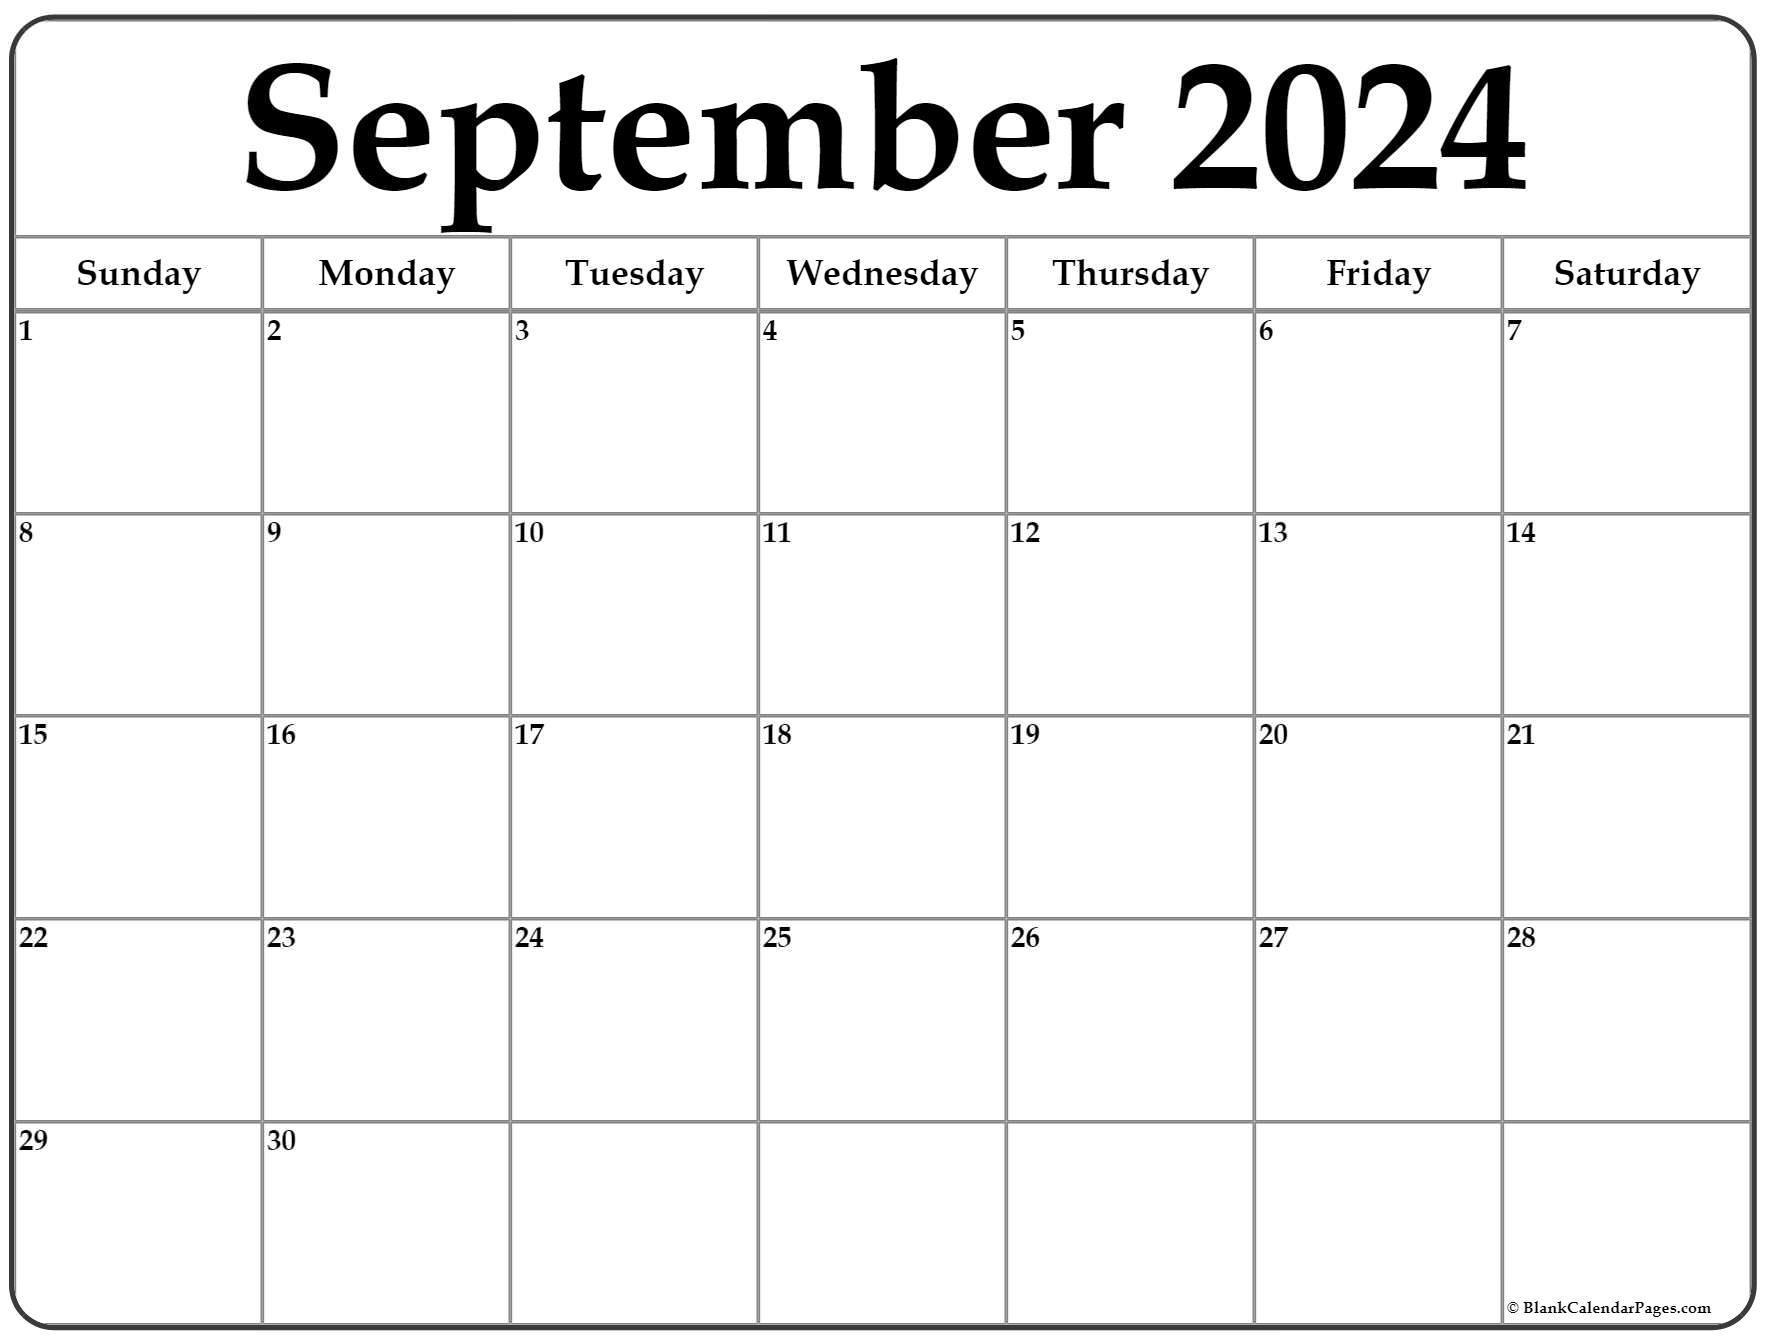 September 2022 Free Printable Calendar September 2022 Calendar | Free Printable Calendar Templates